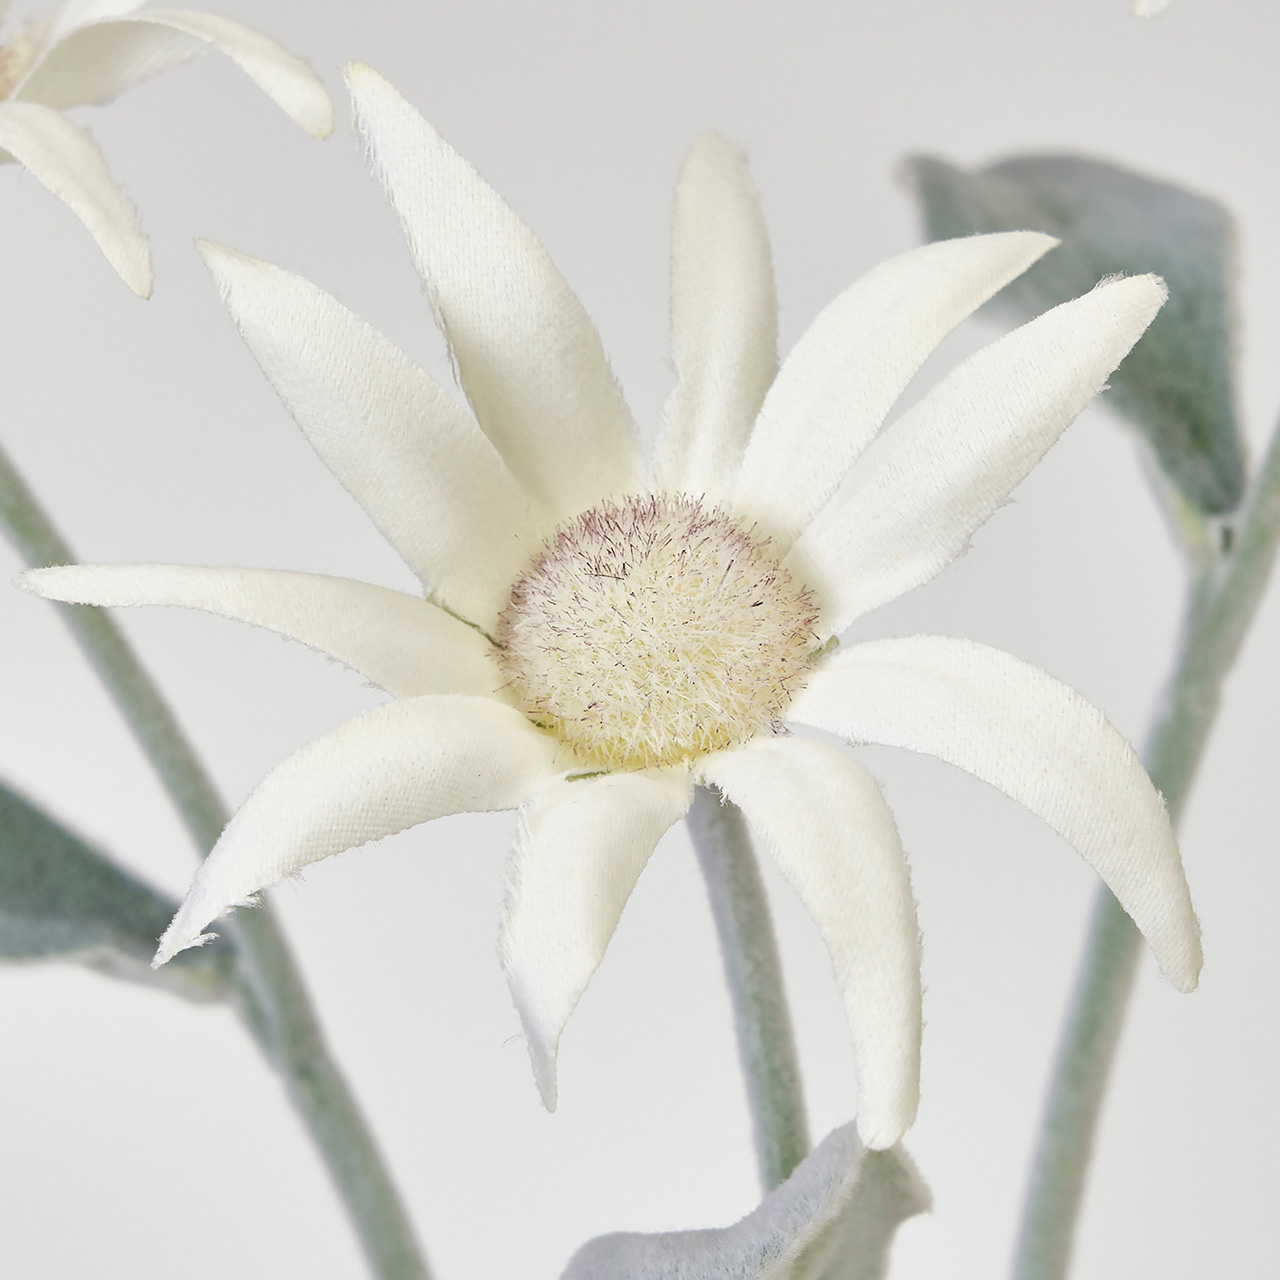 マイフラ 通販 Magiq フランネルスプレー ホワイト アーティフィシャルフラワー 造花 Fm デイジー フランネルフラワー 花径7 長さ 約45cm ホワイト Magiq アーティフィシャルフラワー 造花 全国にmagiq 花器 花資材などをお届けします